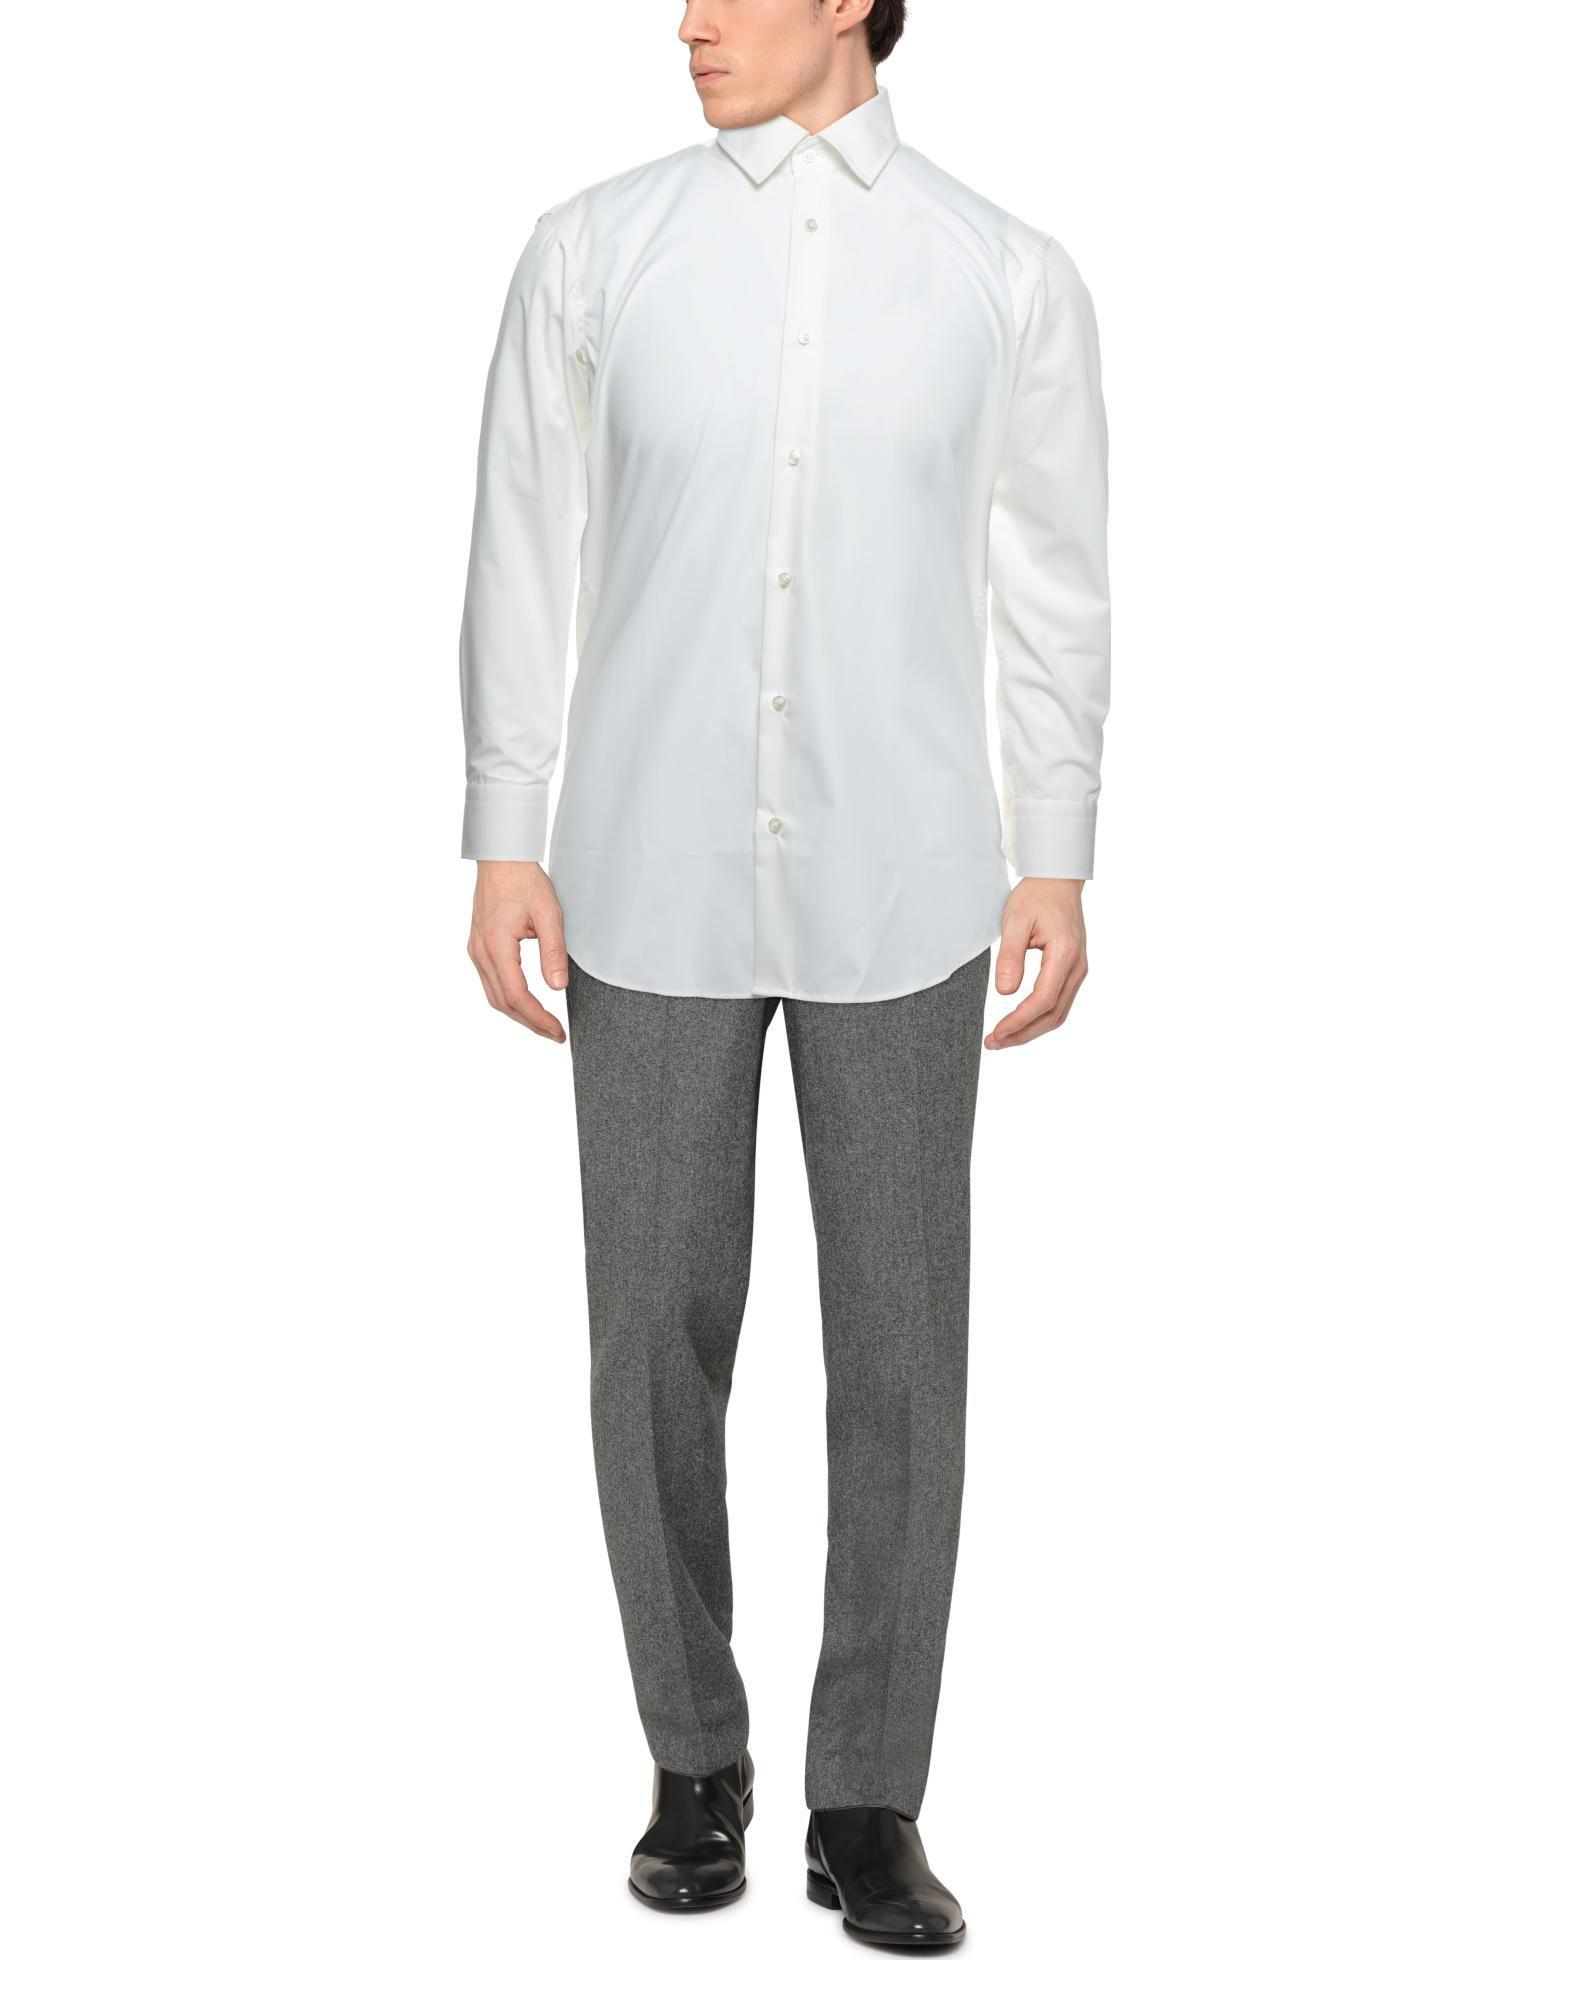 BOSS by HUGO BOSS Cotton Shirt in Ivory (White) for Men - Lyst